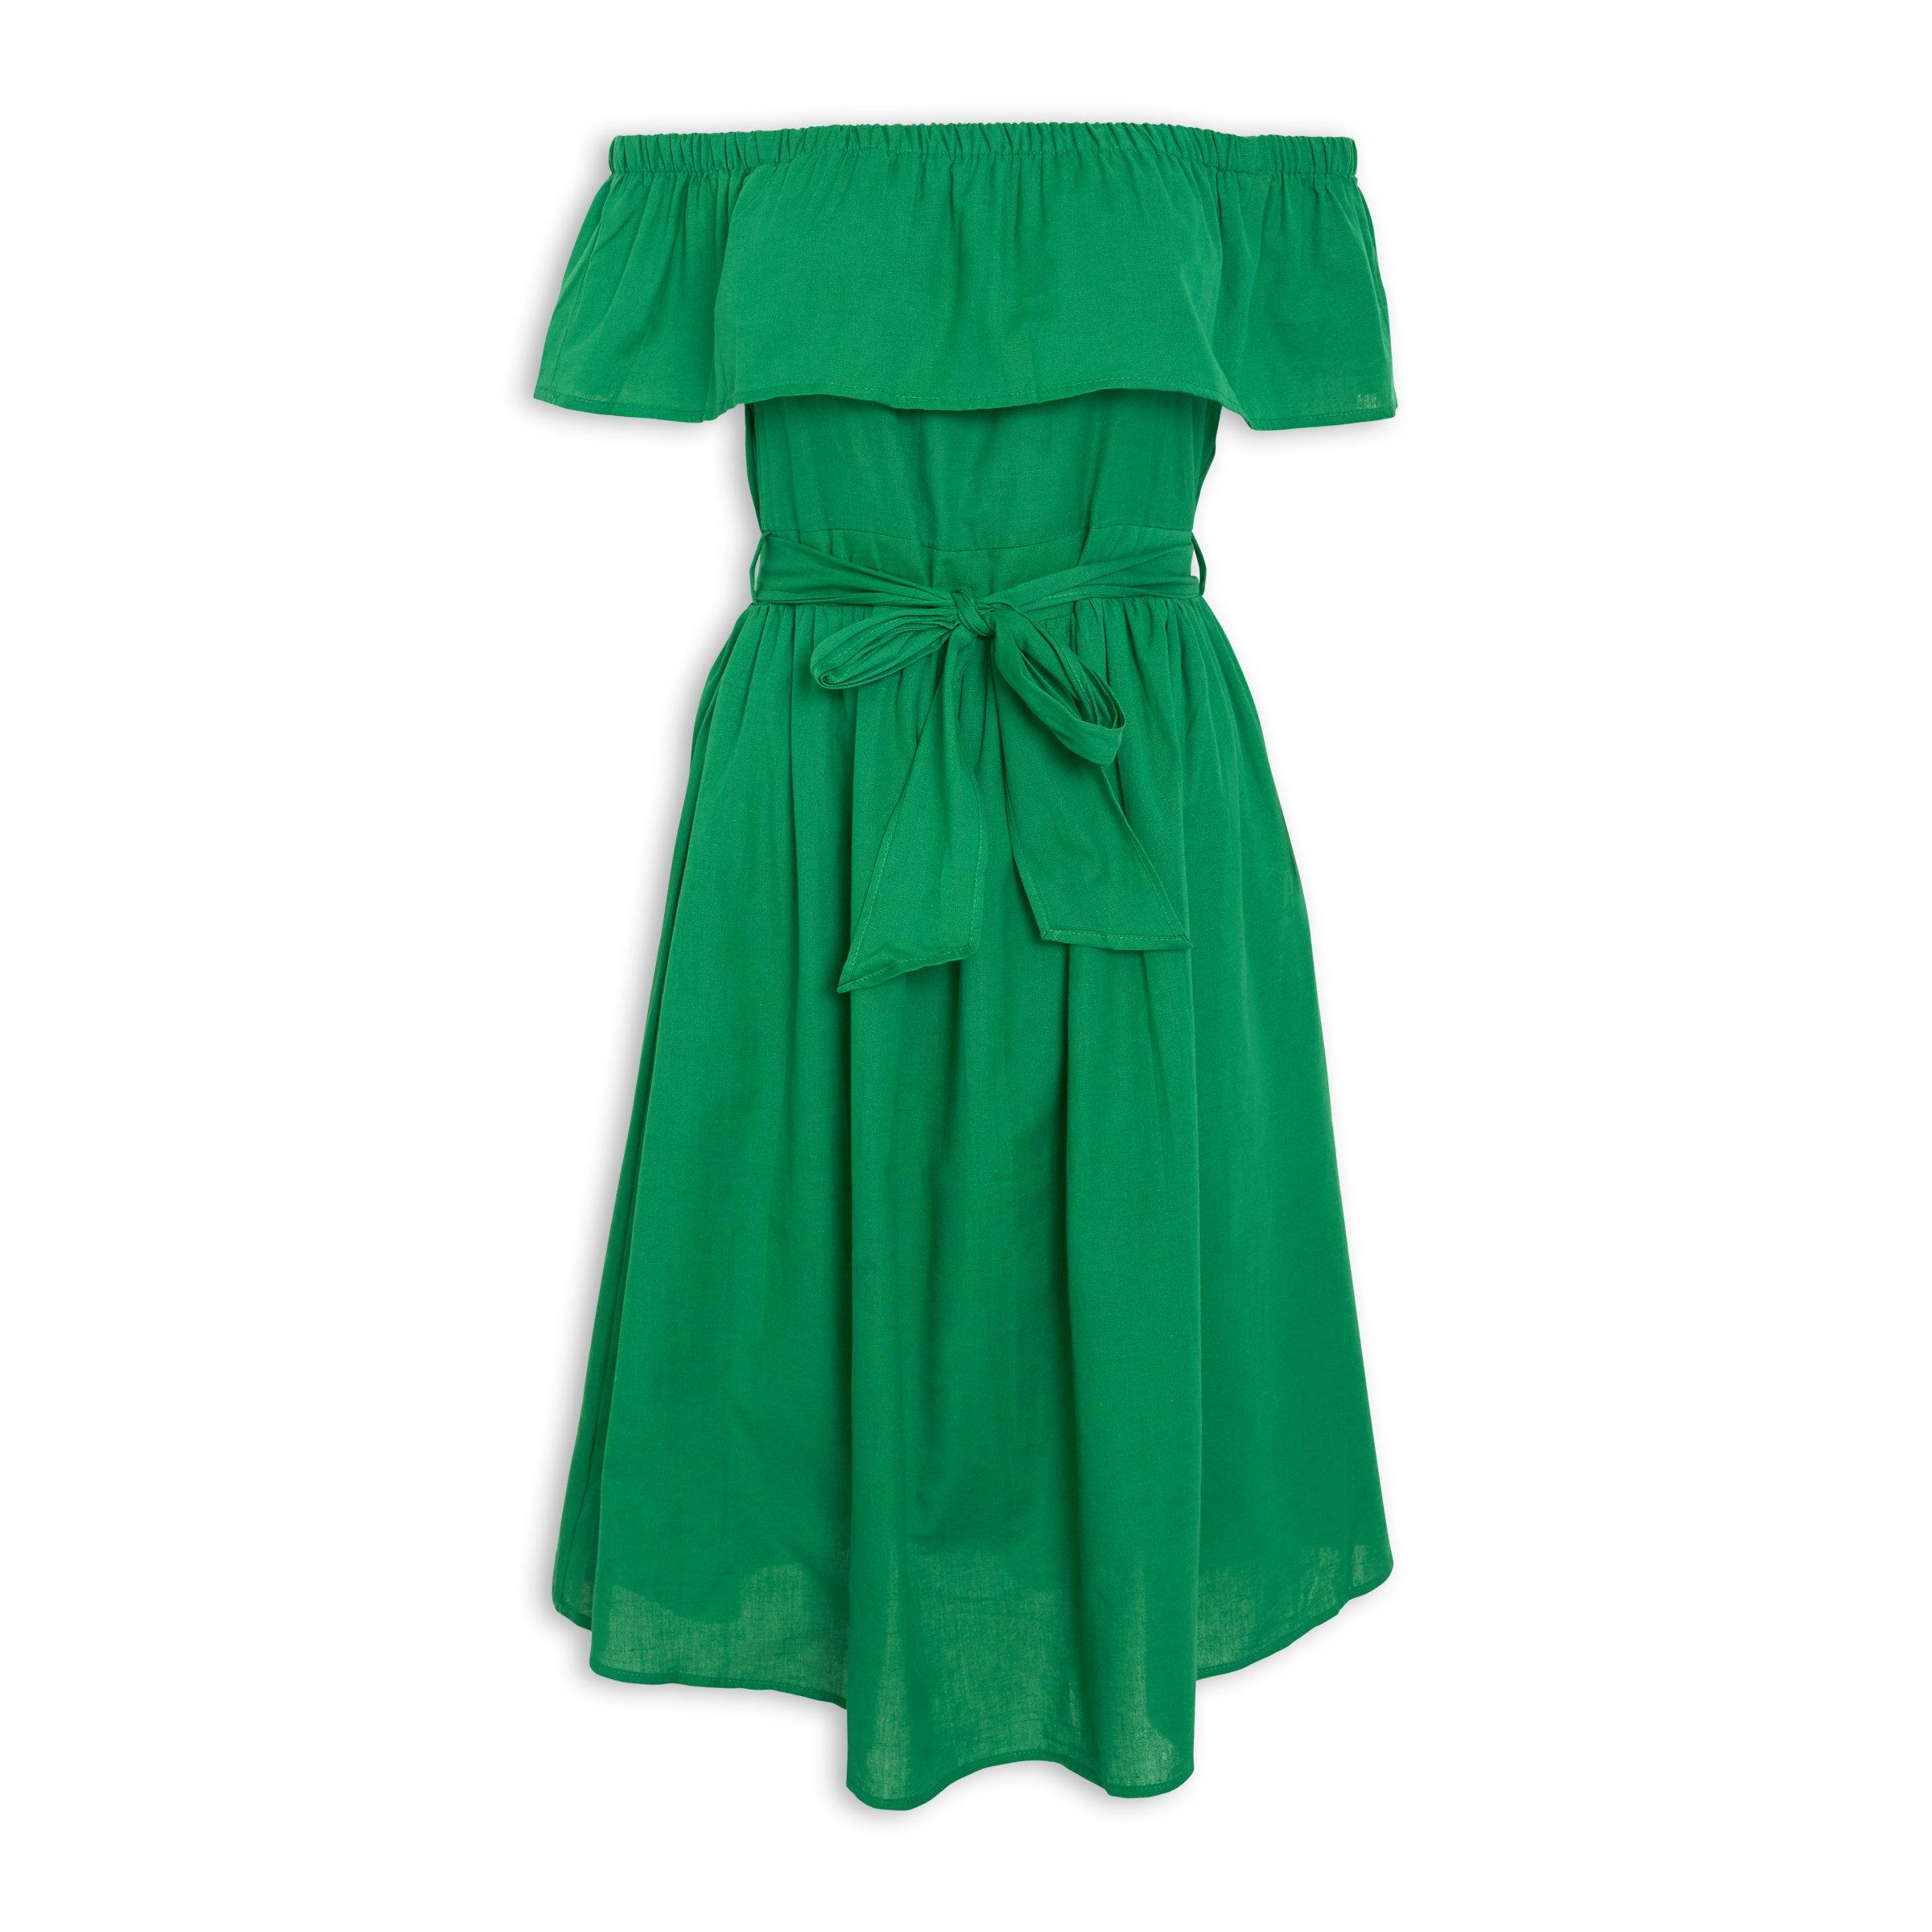 Buy Truworths Green Flare Dress Online | Truworths